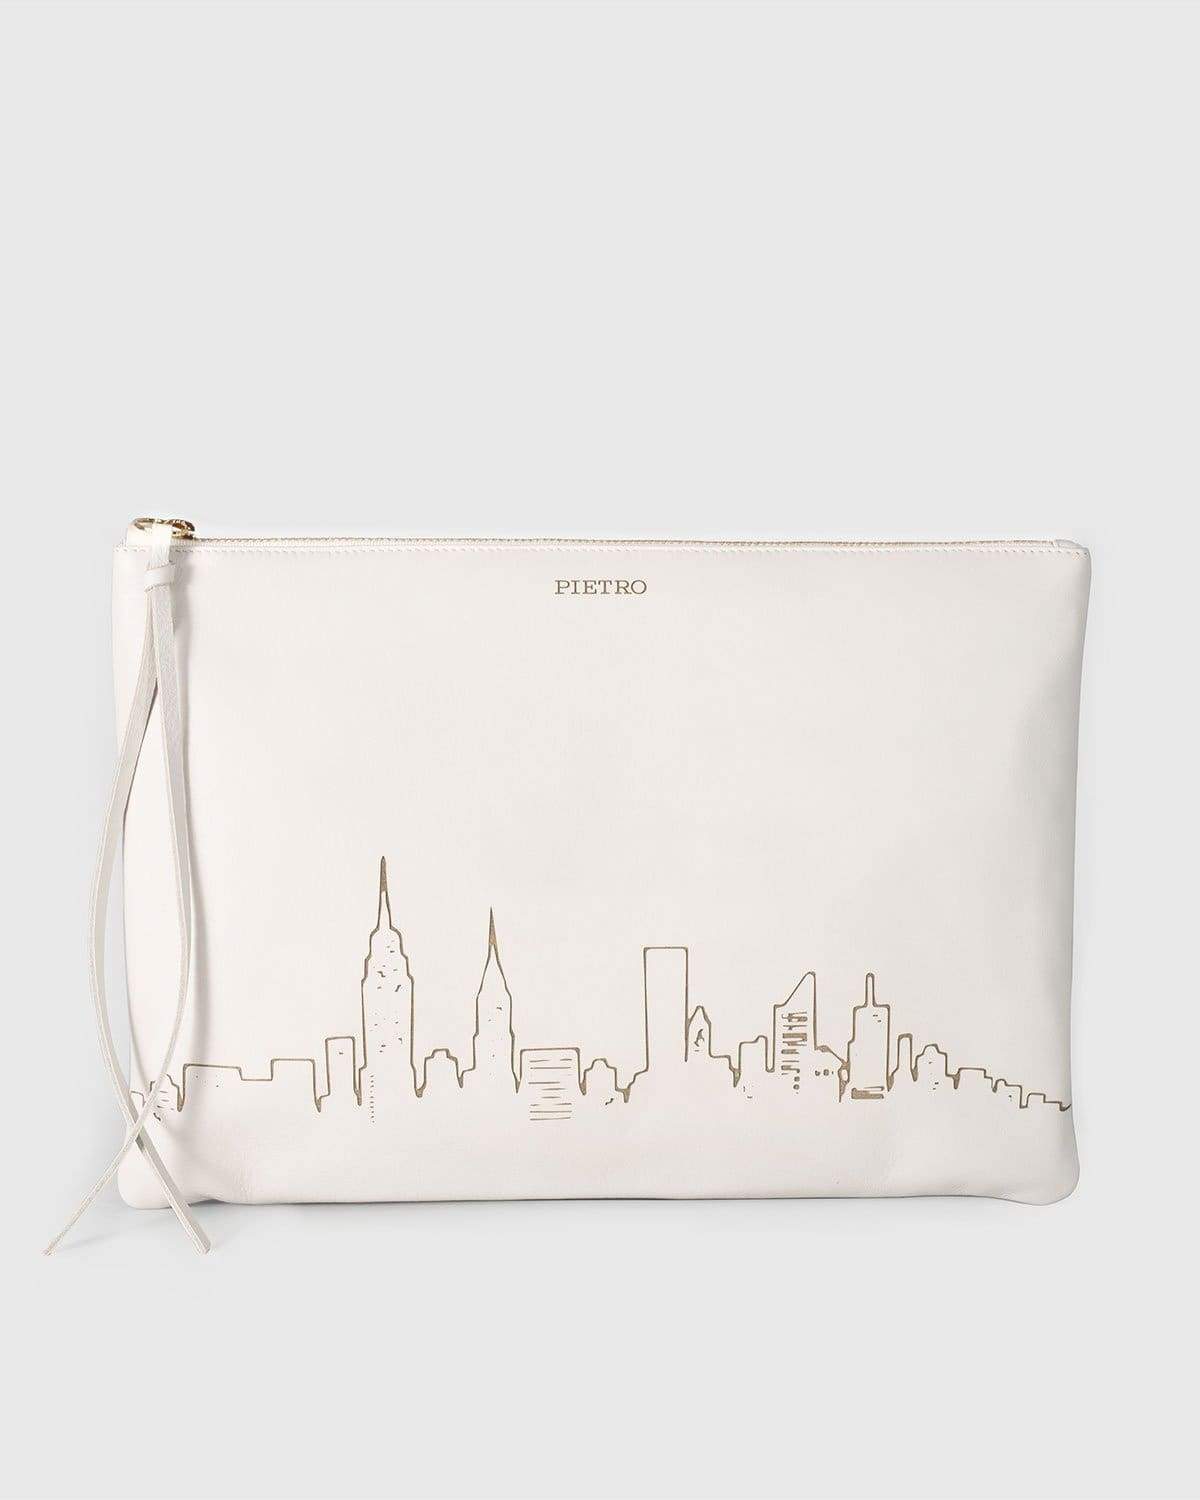 Pietro New York City Skyline - Stone White Bags | Pietro NYC